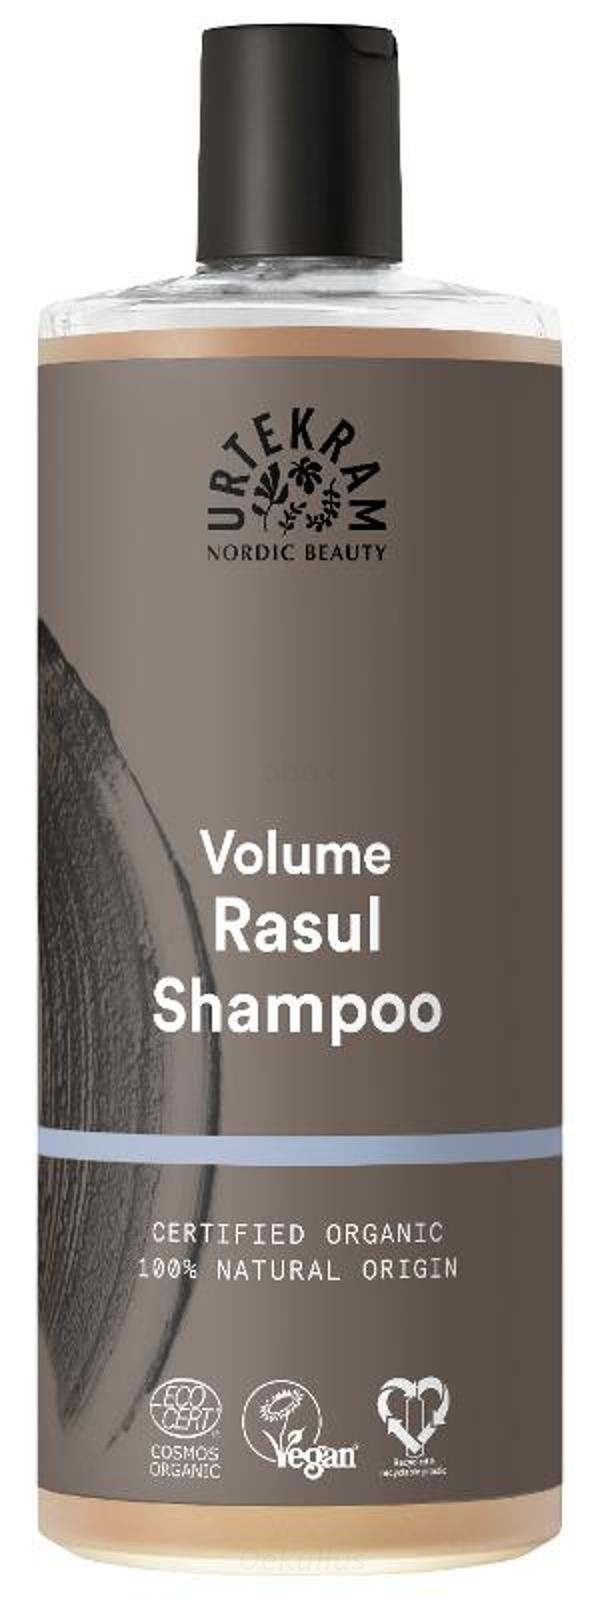 Produktfoto zu Rasul Shampoo 500ml